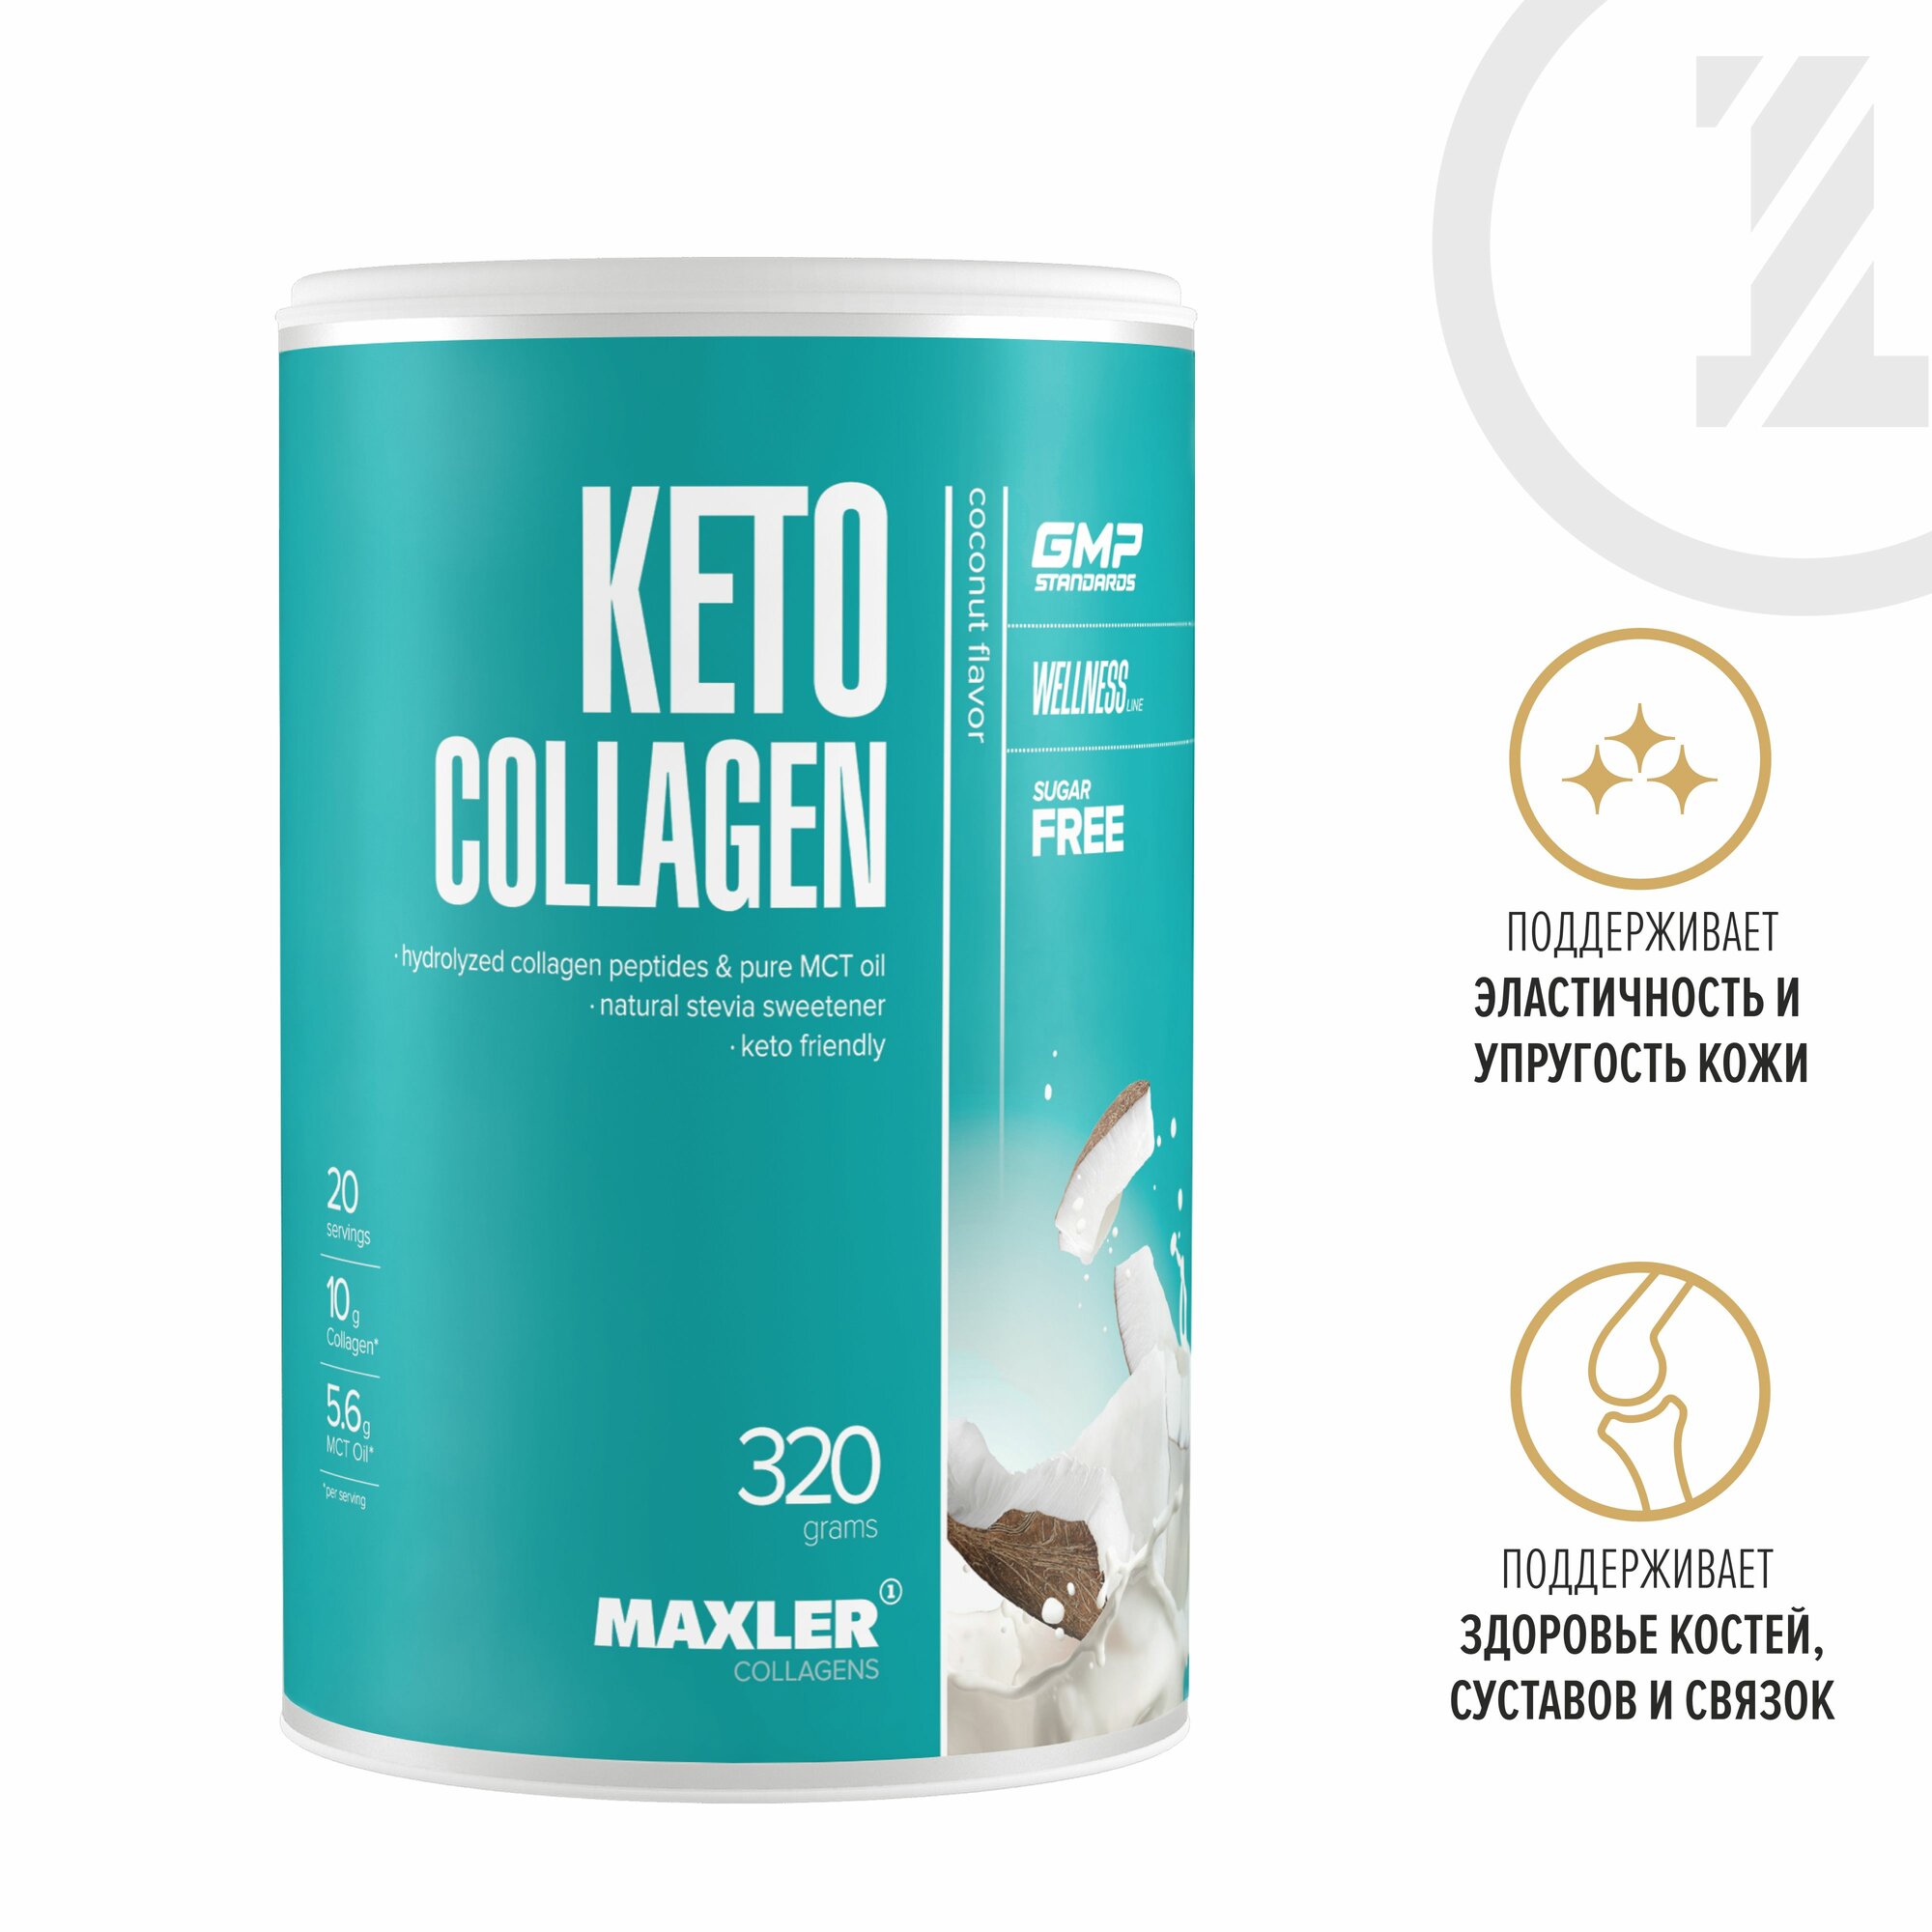 Кето коллаген Maxler Keto Collagen ( Гидролизованный коллаген и чистое масло MCT) 320 г. - Кокос